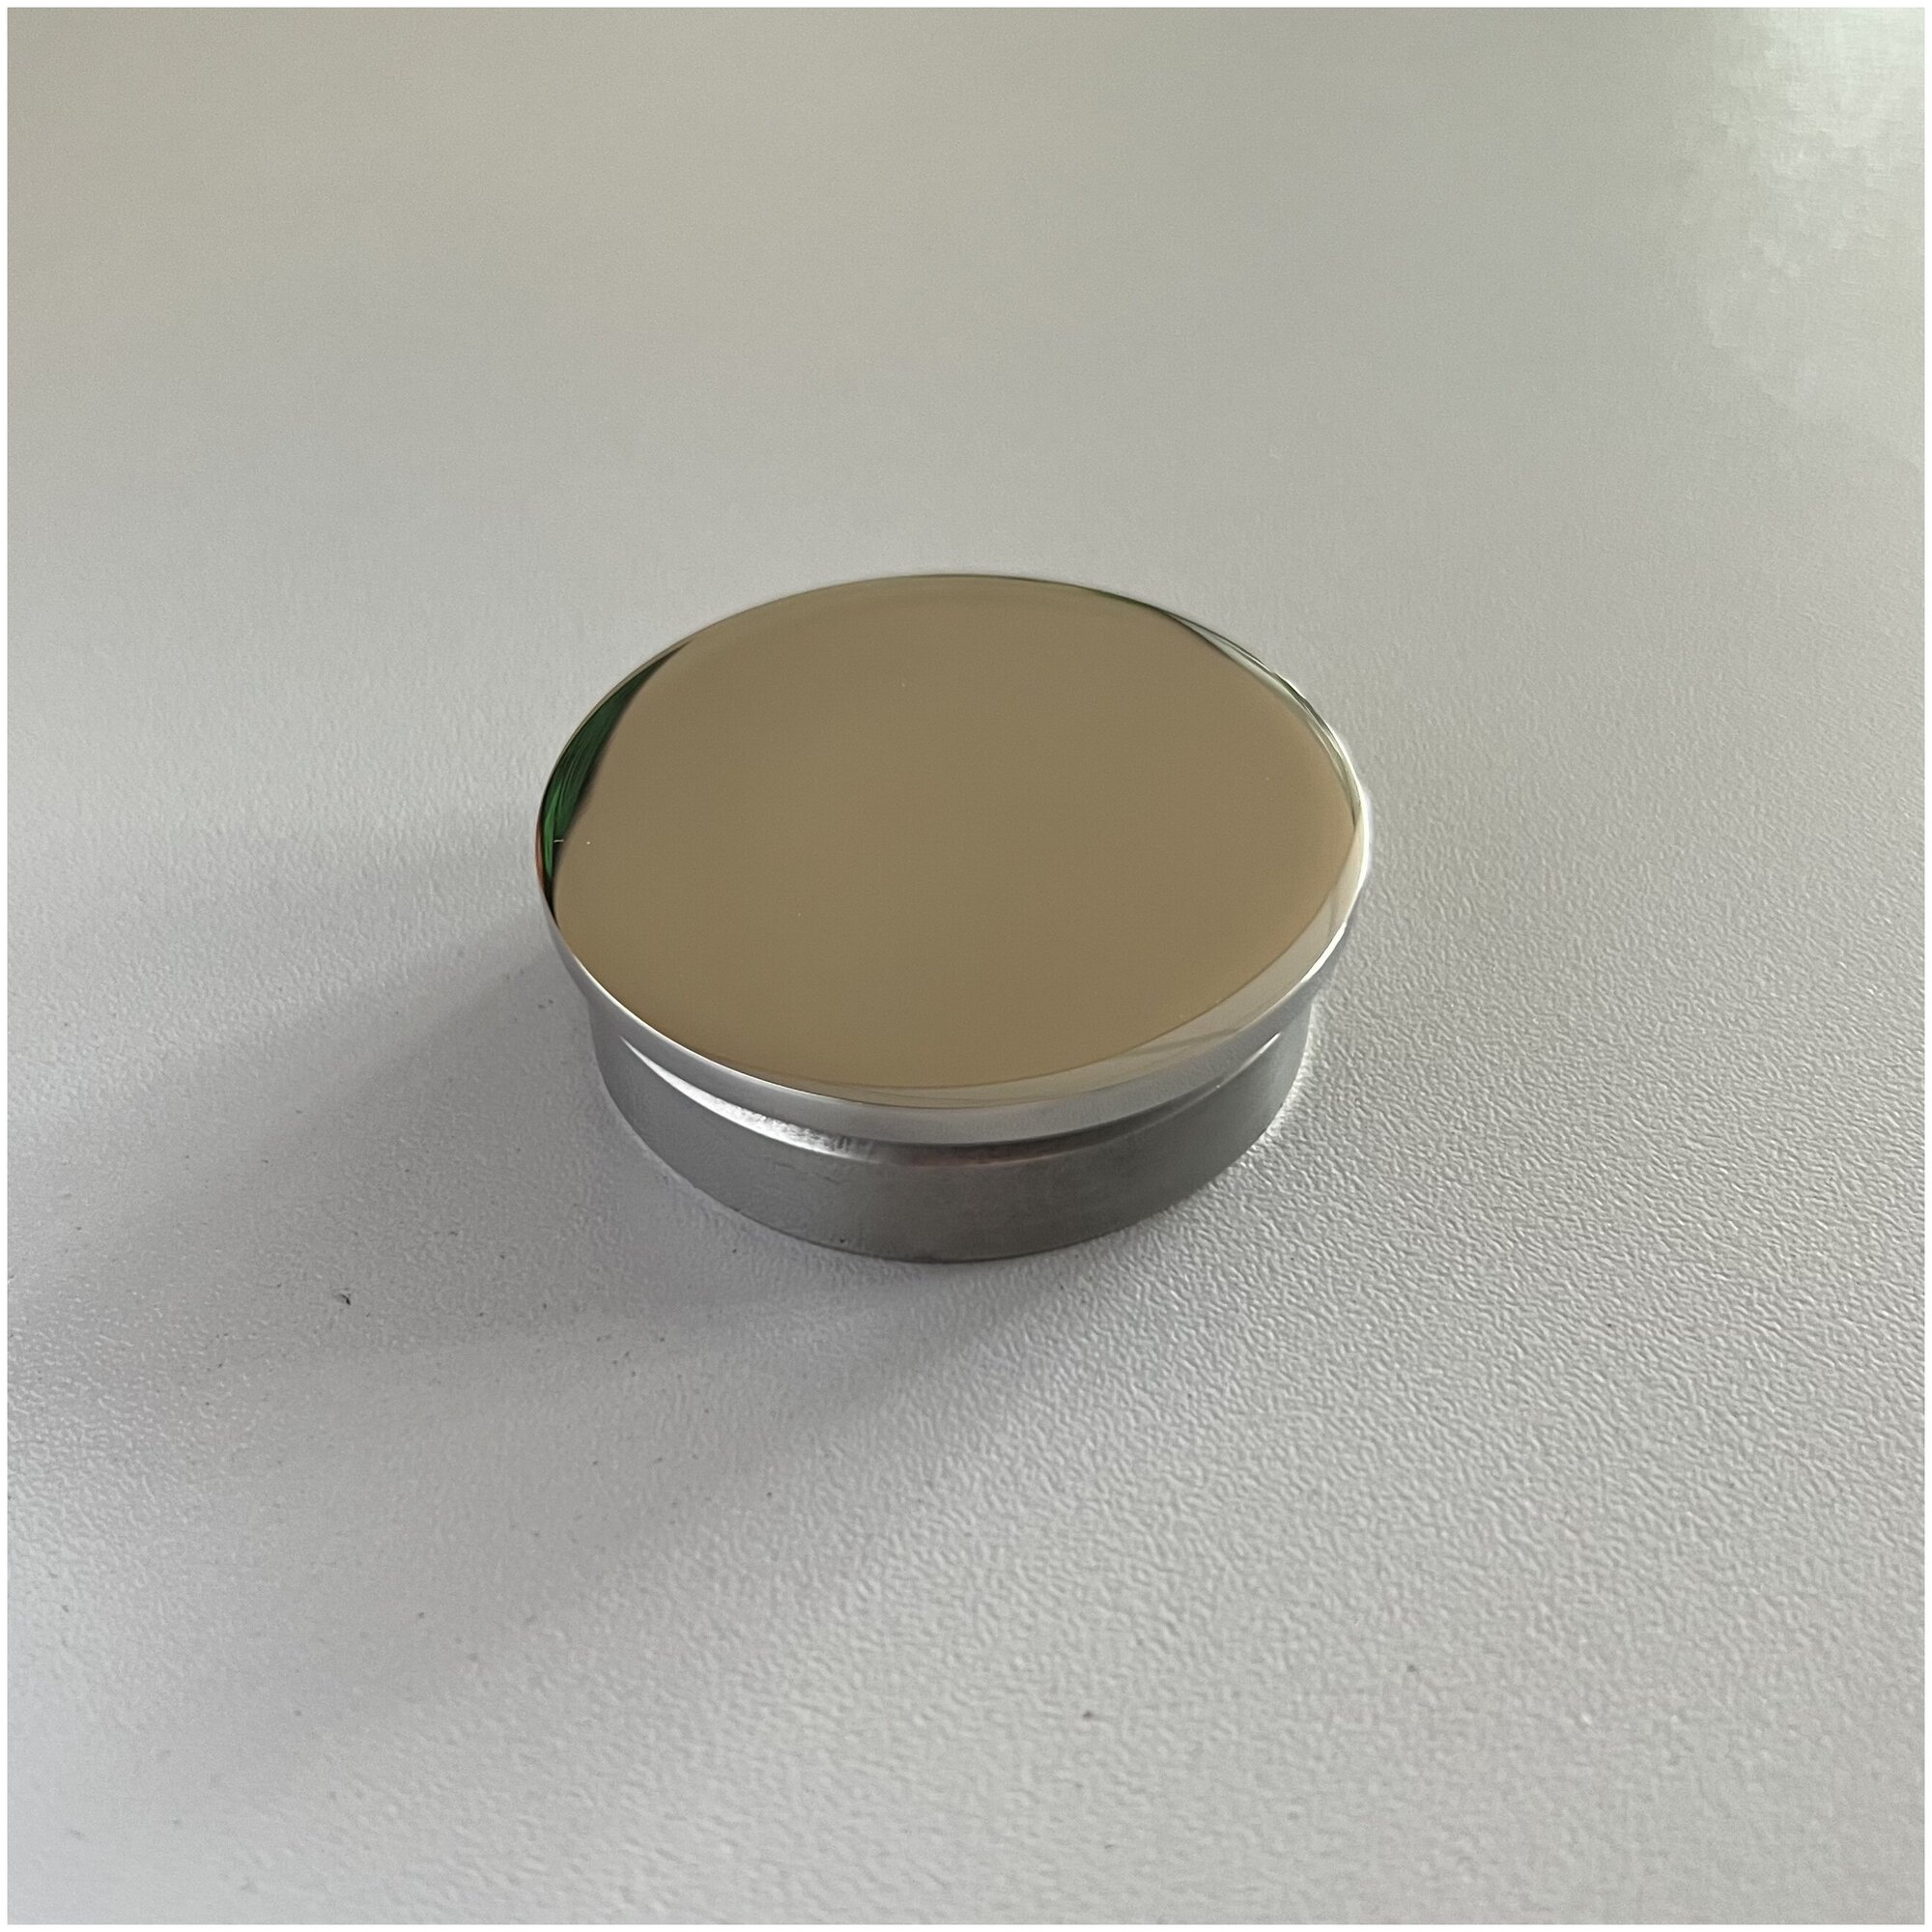 Заглушка плоская литая натеко для перил/труб/поручней из нержавеющей стали AISI 304, 50.8 мм (Комплектующие для ограждений) (2 шт.)